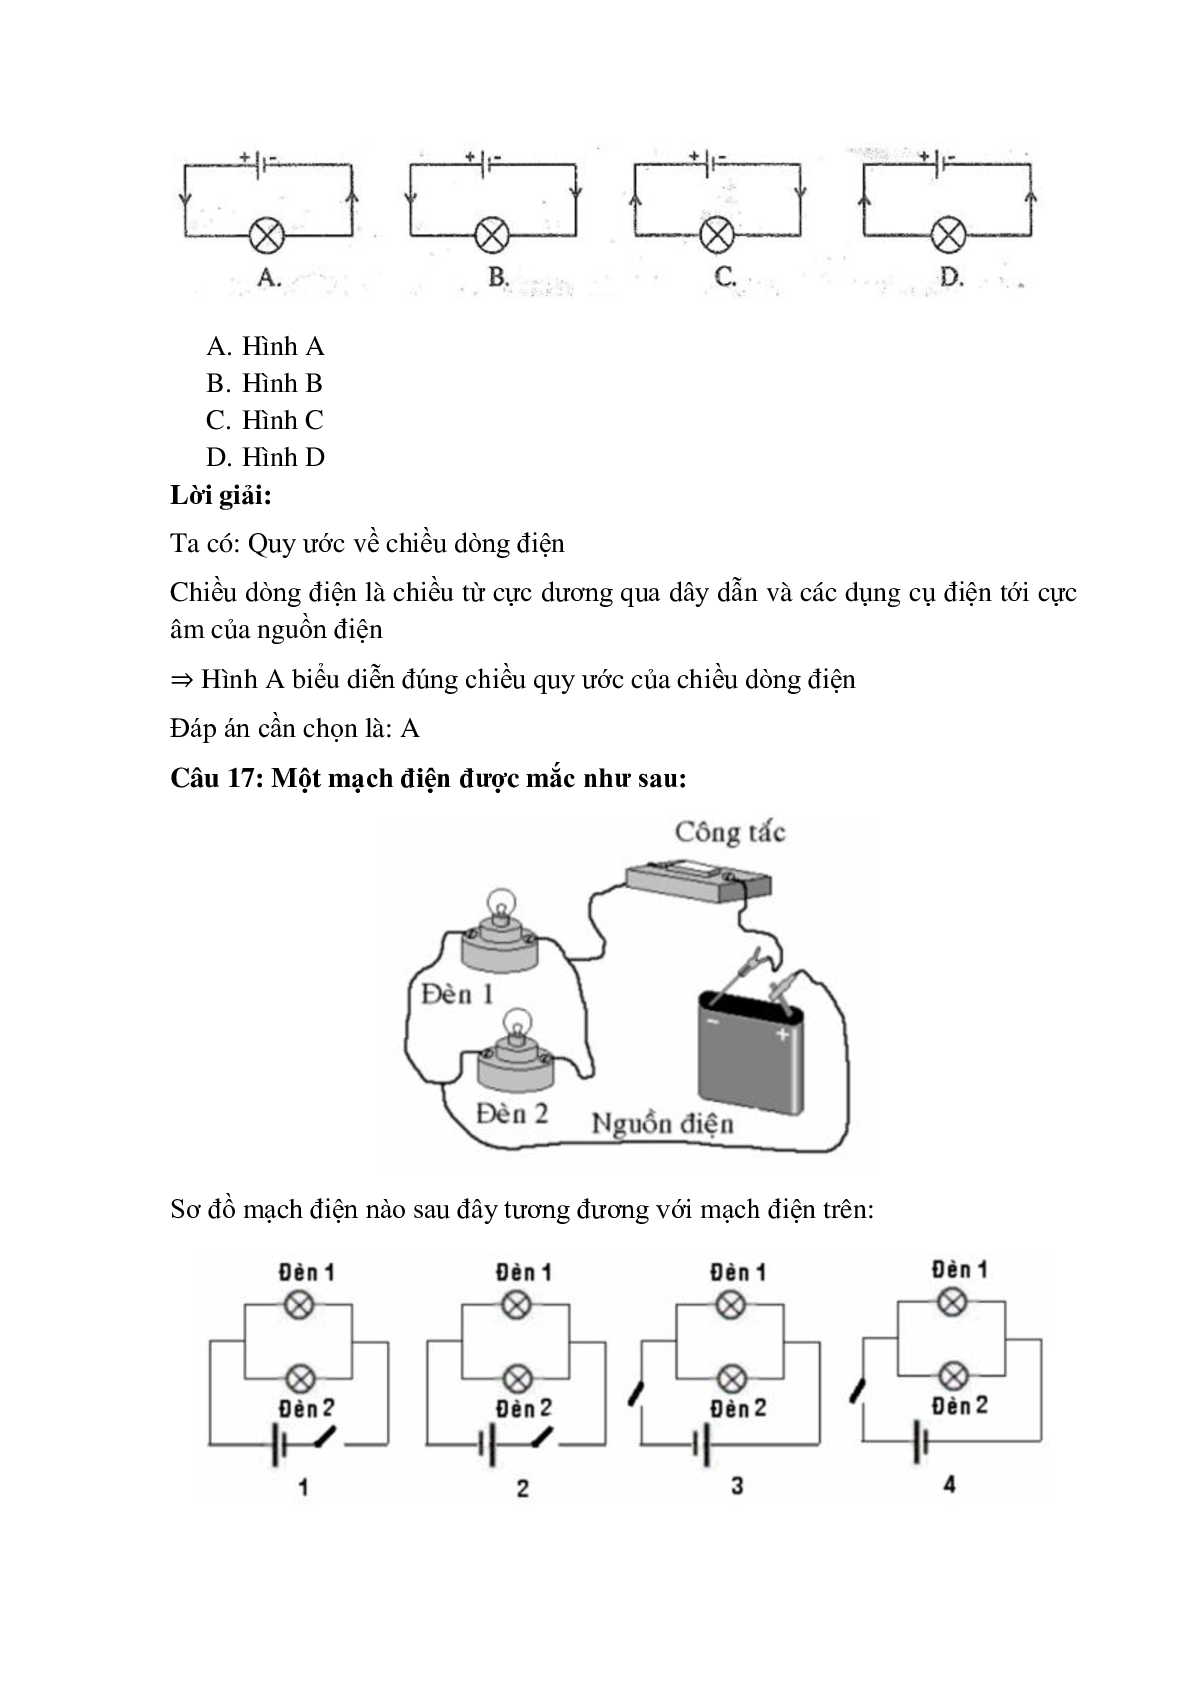 Trắc nghiệm Sơ đồ mạch điện - Chiều dòng điện có đáp án – Vật lí lớp 7 (trang 7)